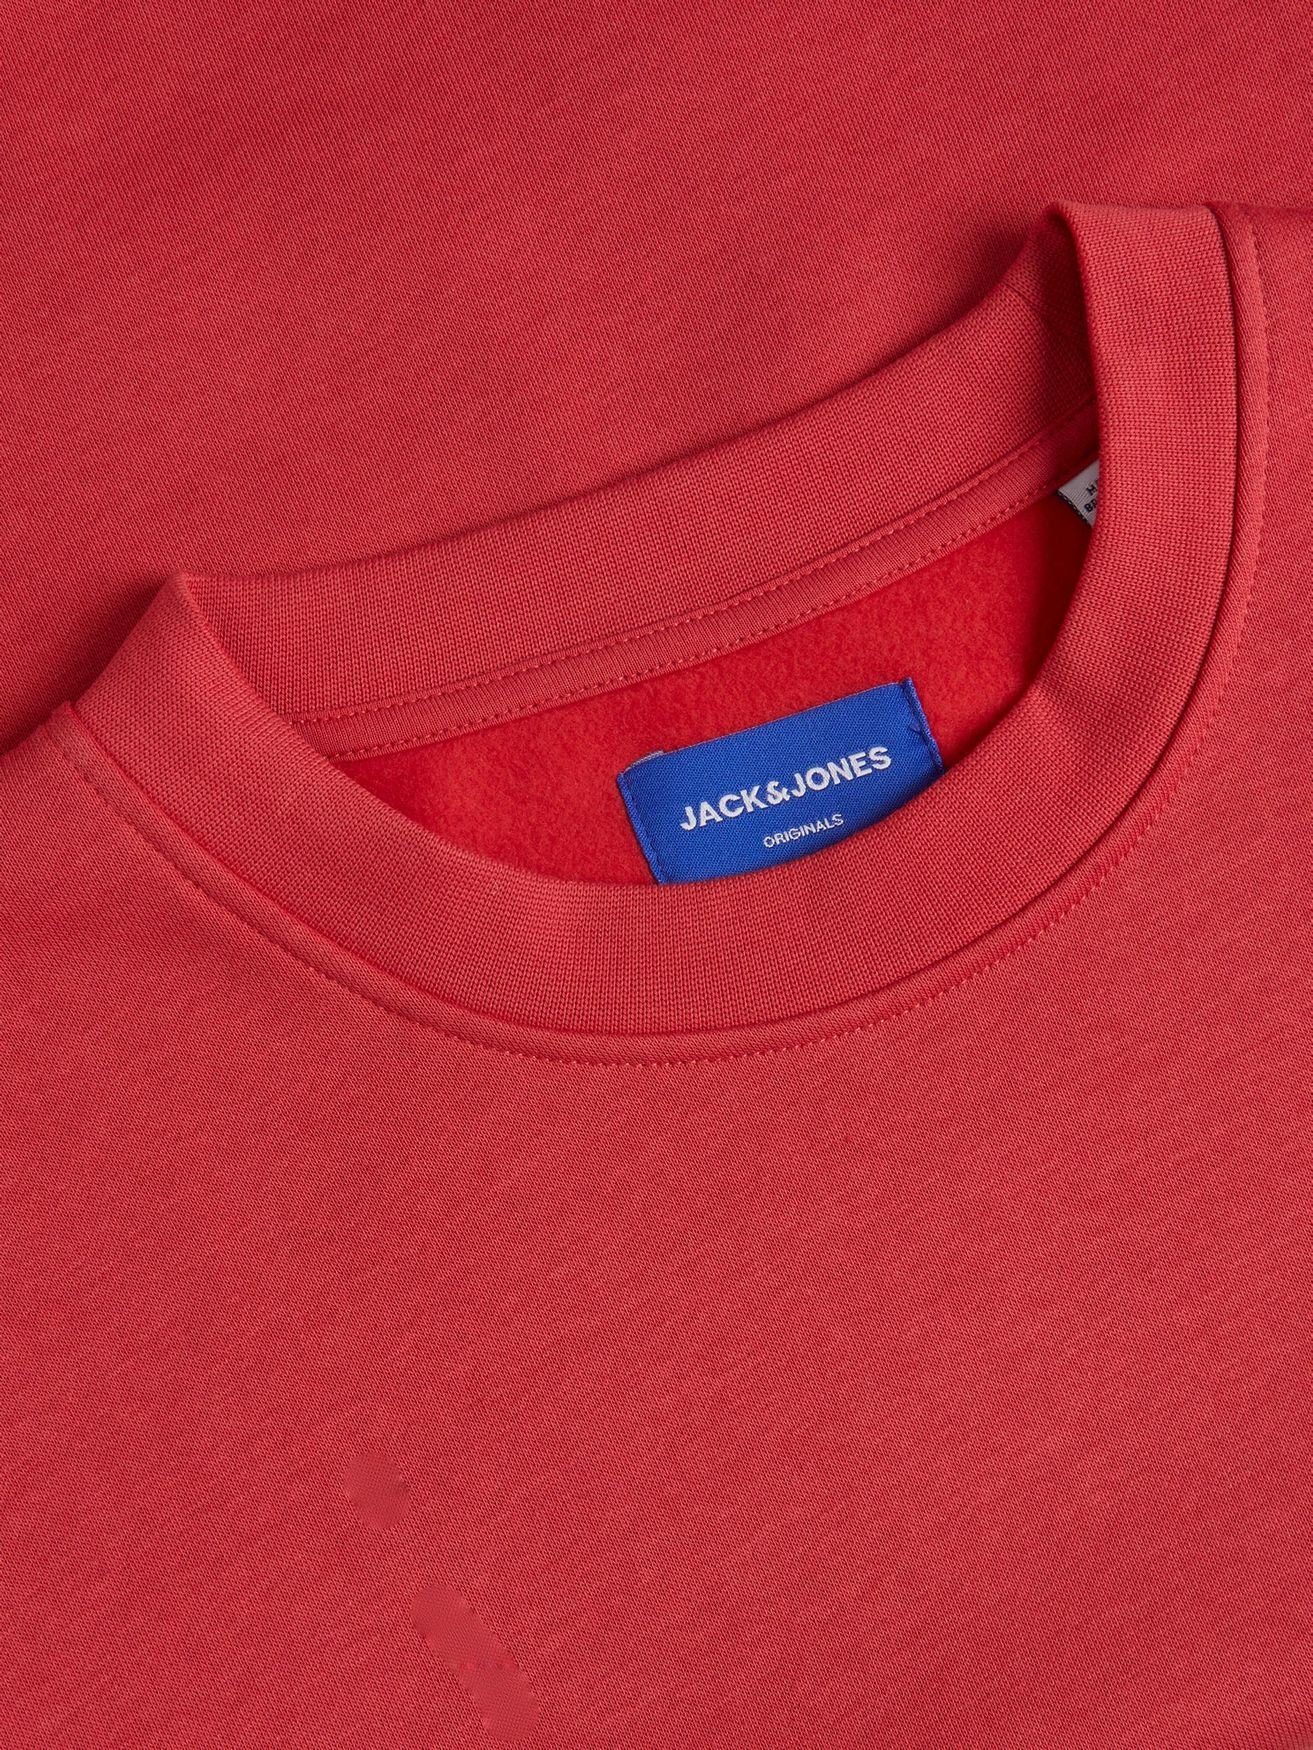 Rot Langarm Shirt ohne Pullover JORBRINK 4508 Sweatshirt Sweater & Kapuze Rundhals Jones in Jack Basic